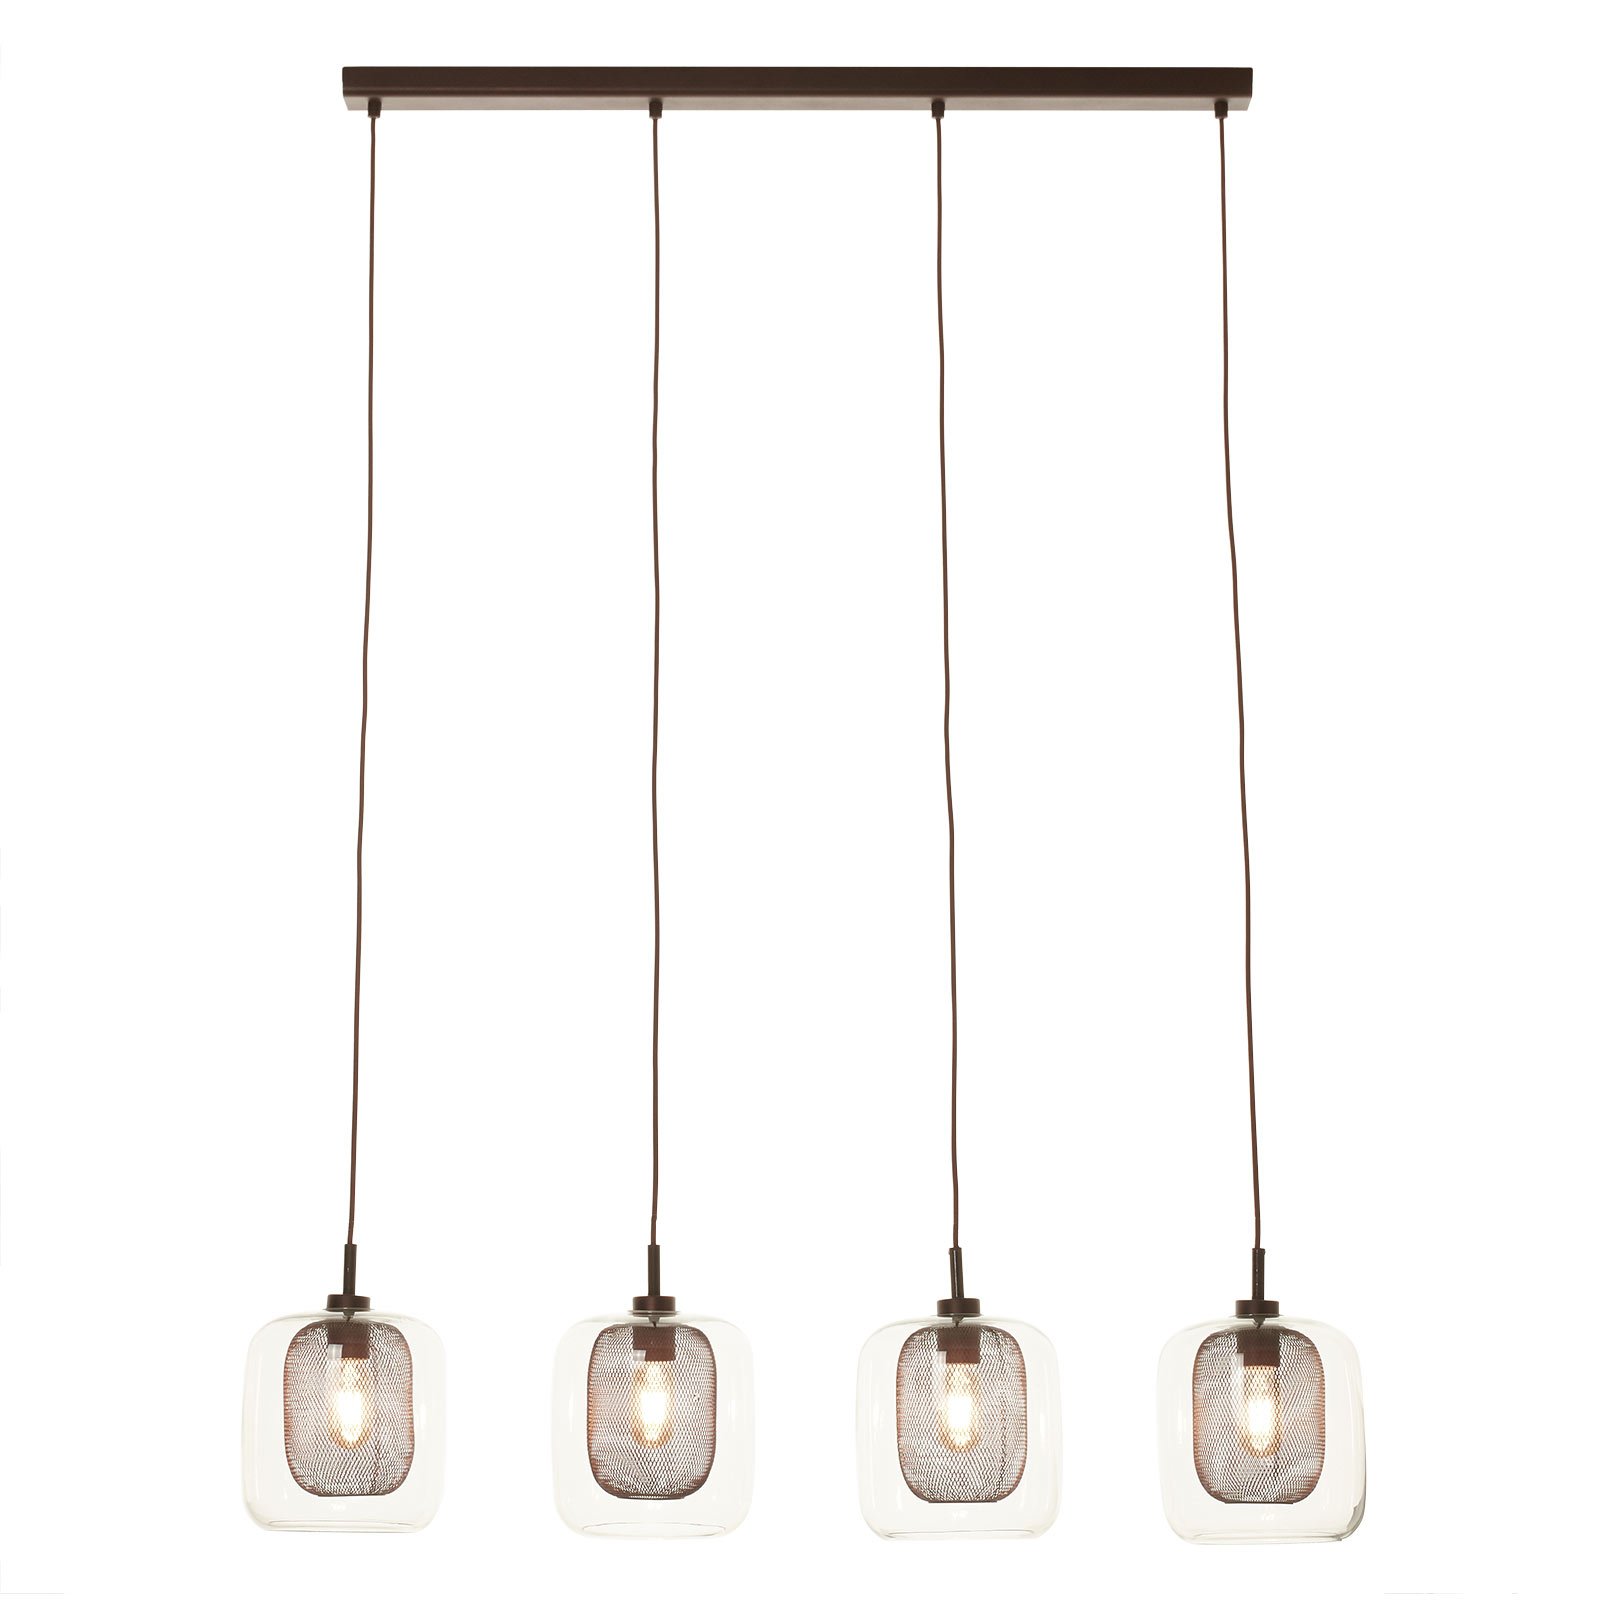 Fox pendant light, 4-bulb, double shades, glass